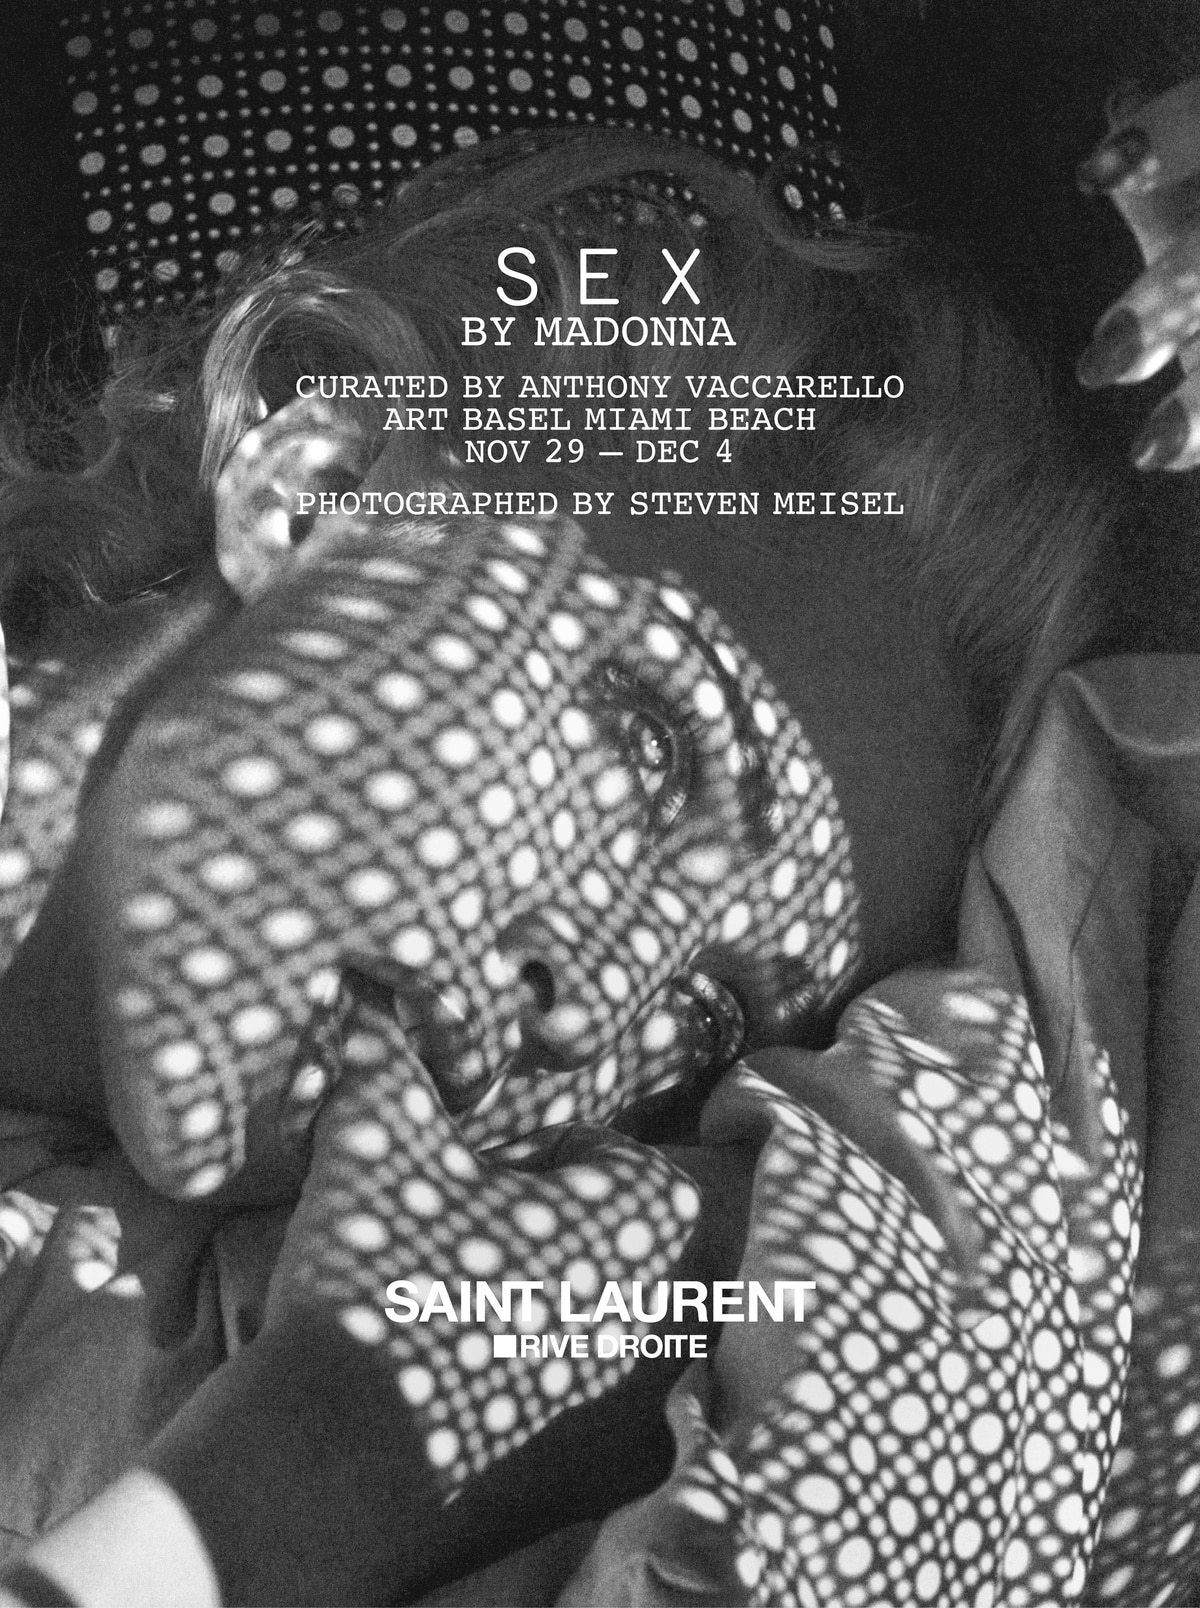 Saint Laurent Rive Droite "SEX by Madonna" Exhibition